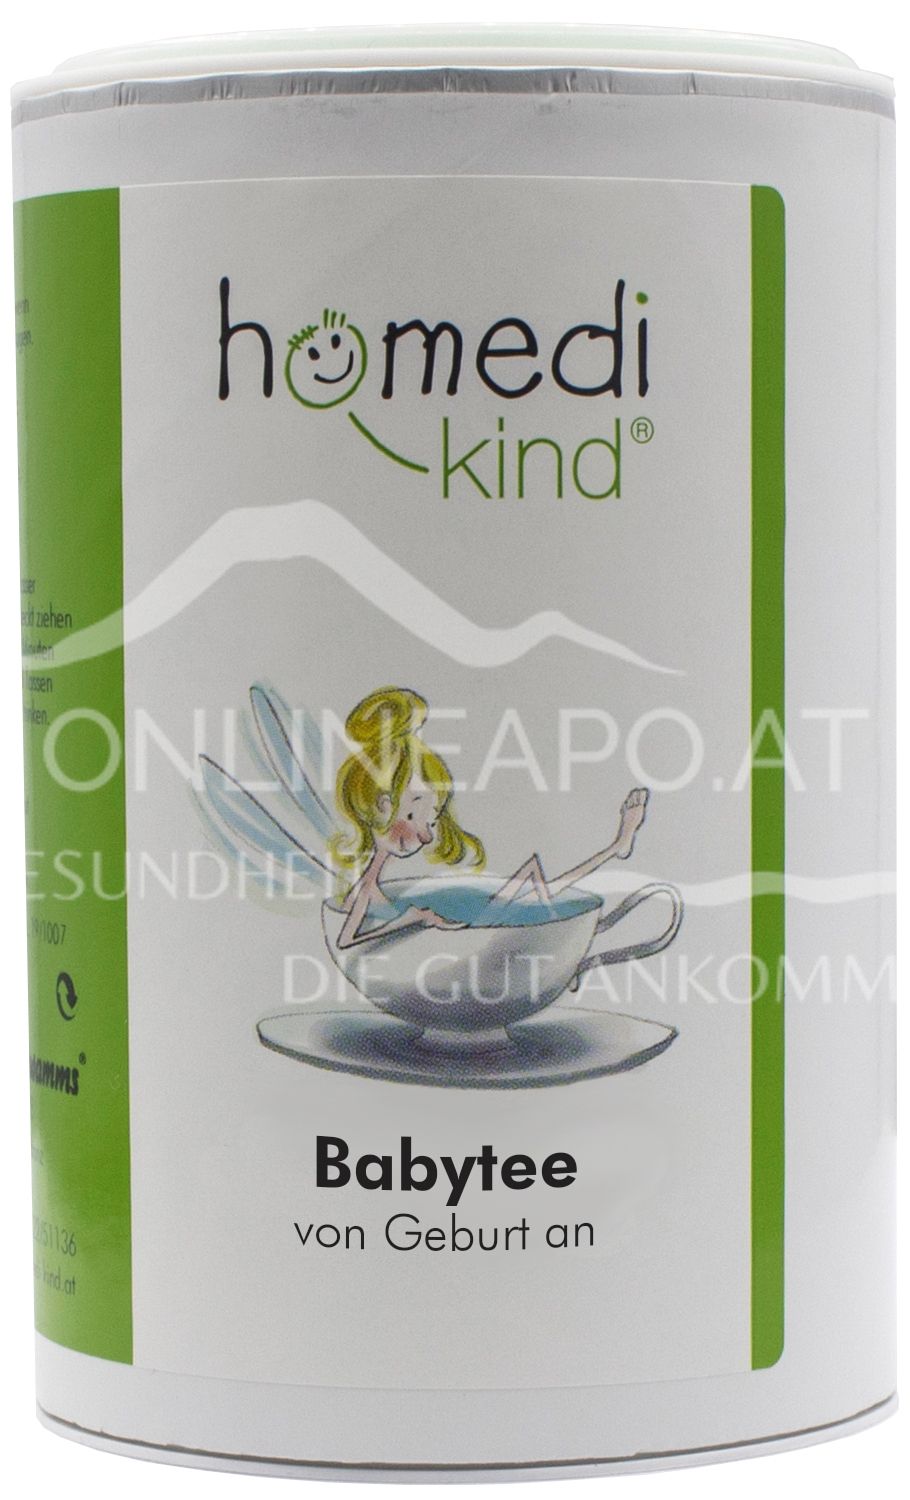 homedi-kind Baby Tee